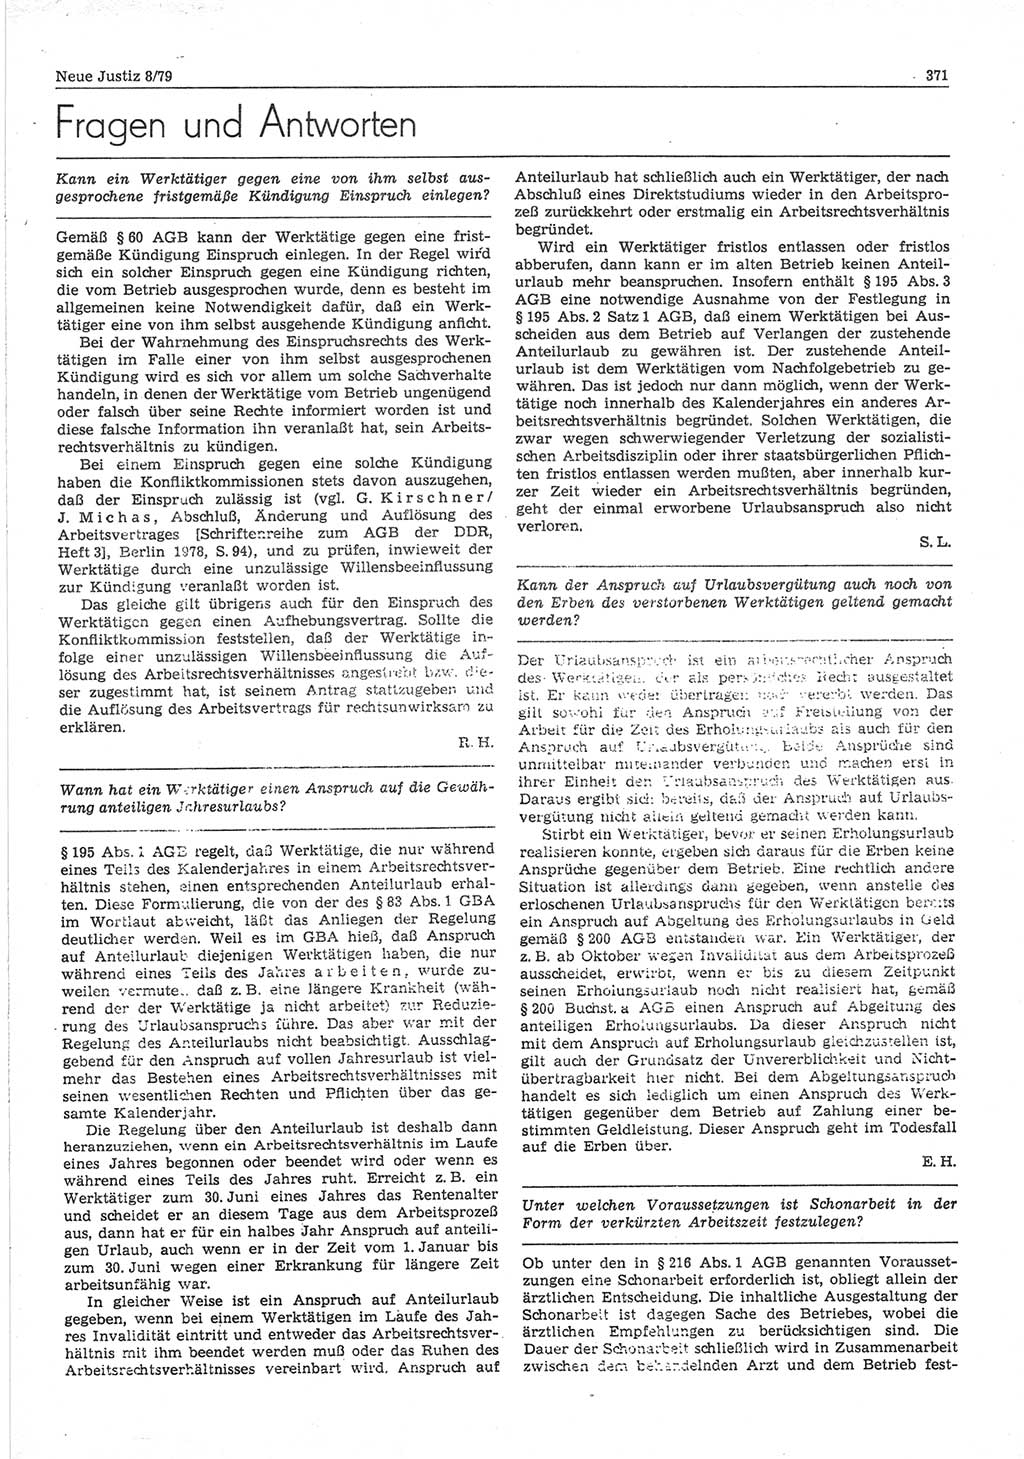 Neue Justiz (NJ), Zeitschrift für sozialistisches Recht und Gesetzlichkeit [Deutsche Demokratische Republik (DDR)], 33. Jahrgang 1979, Seite 371 (NJ DDR 1979, S. 371)